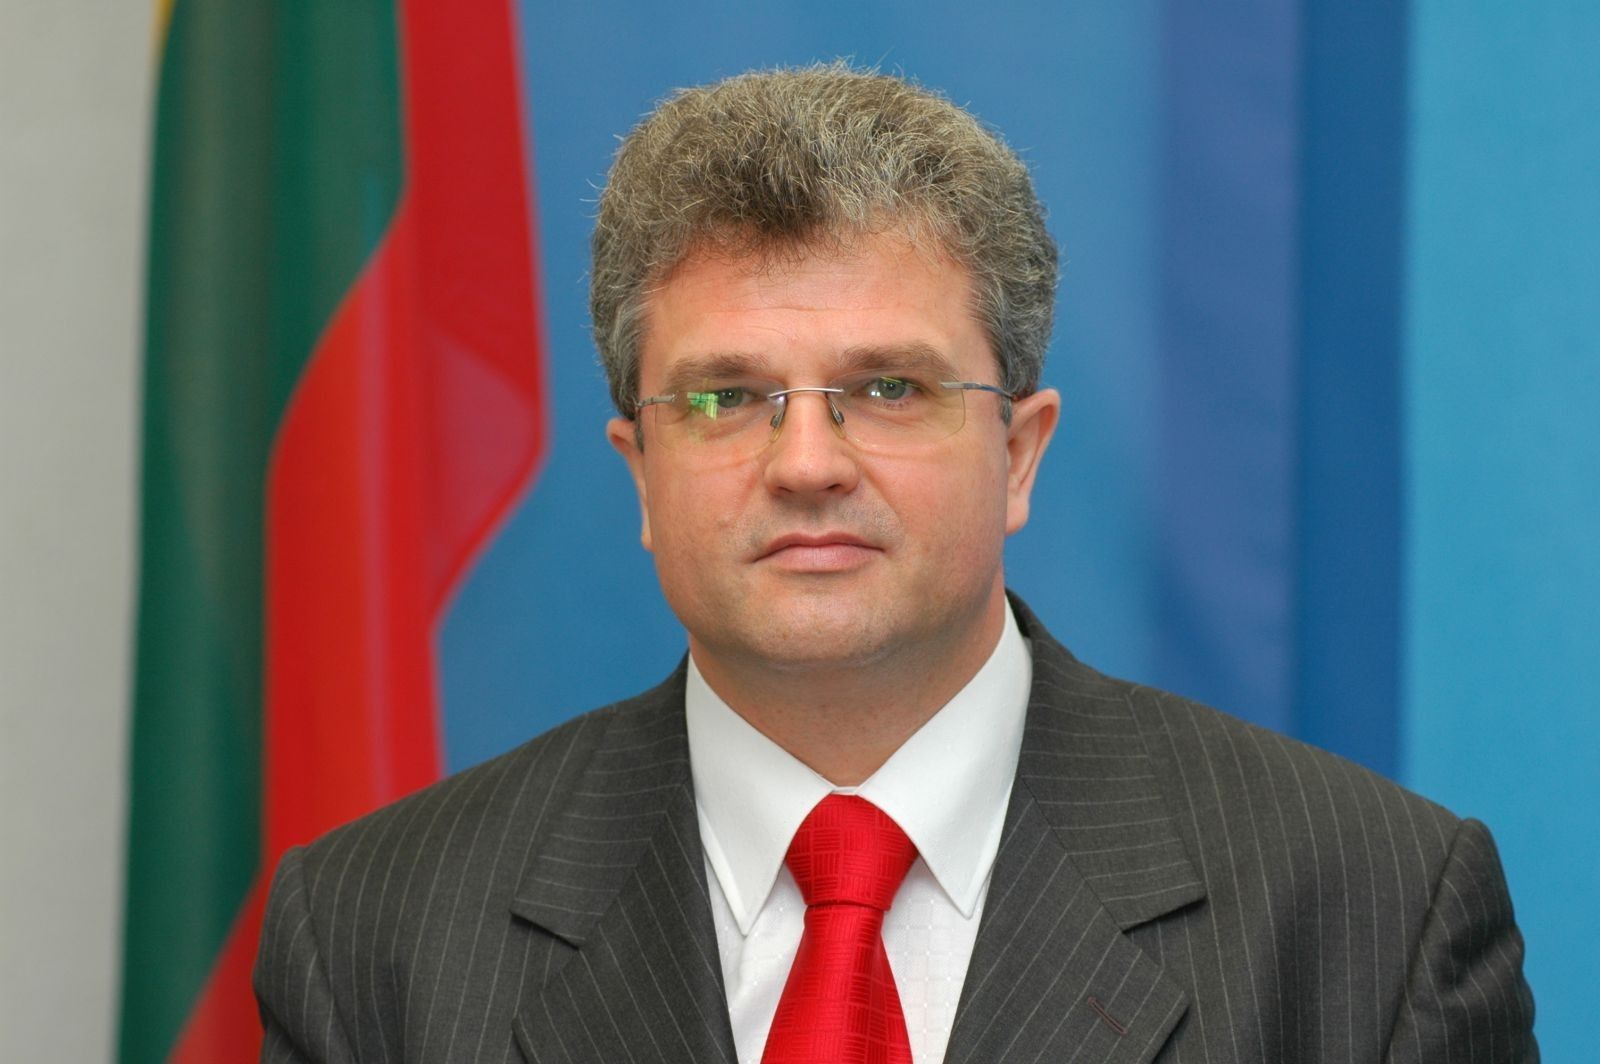 Fot.: Ministerstwo Spraw Zagranicznych Republiki Litewskiej